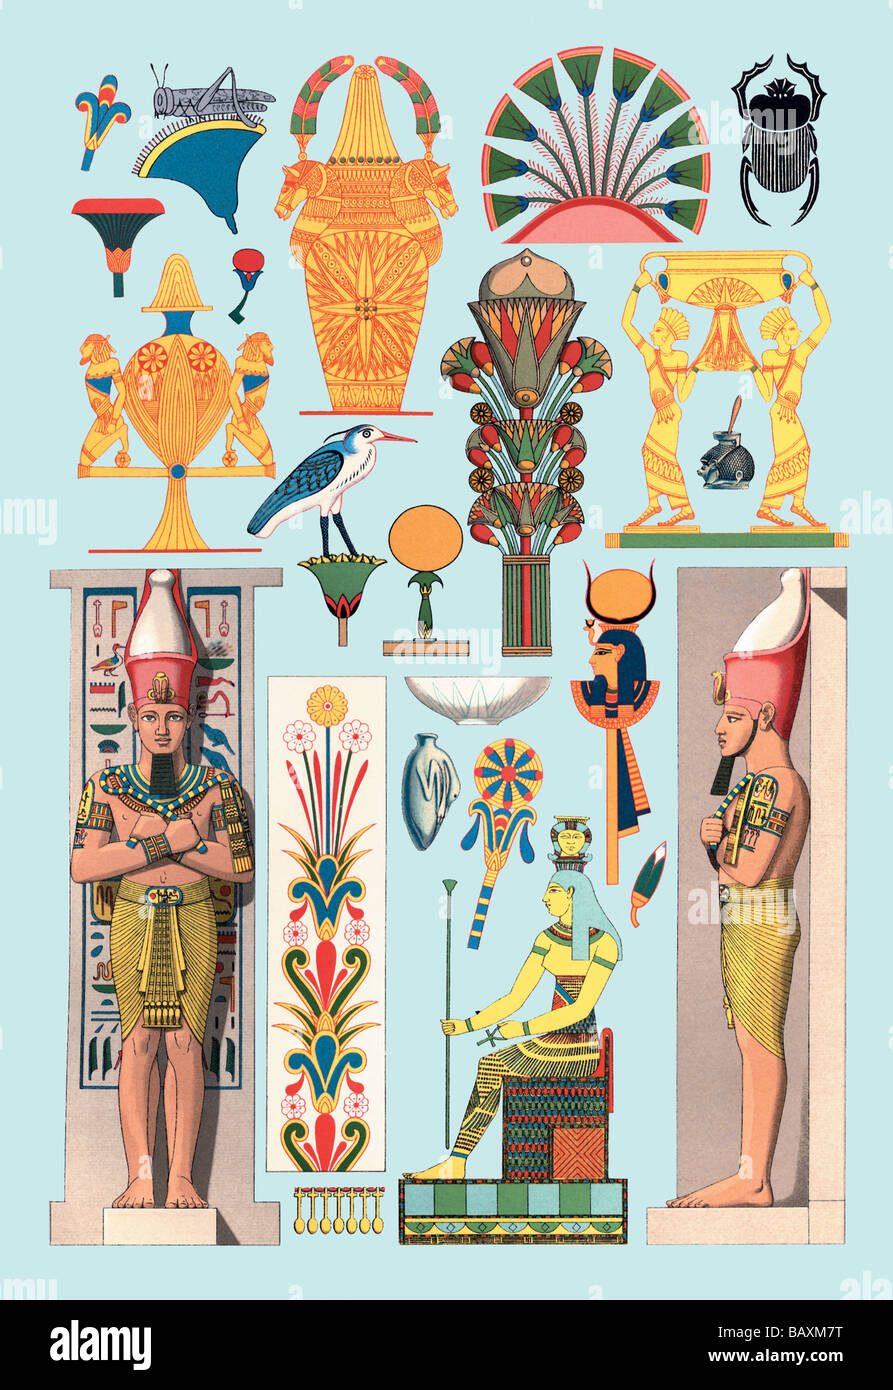 La conception égyptienne # 1 Banque D'Images